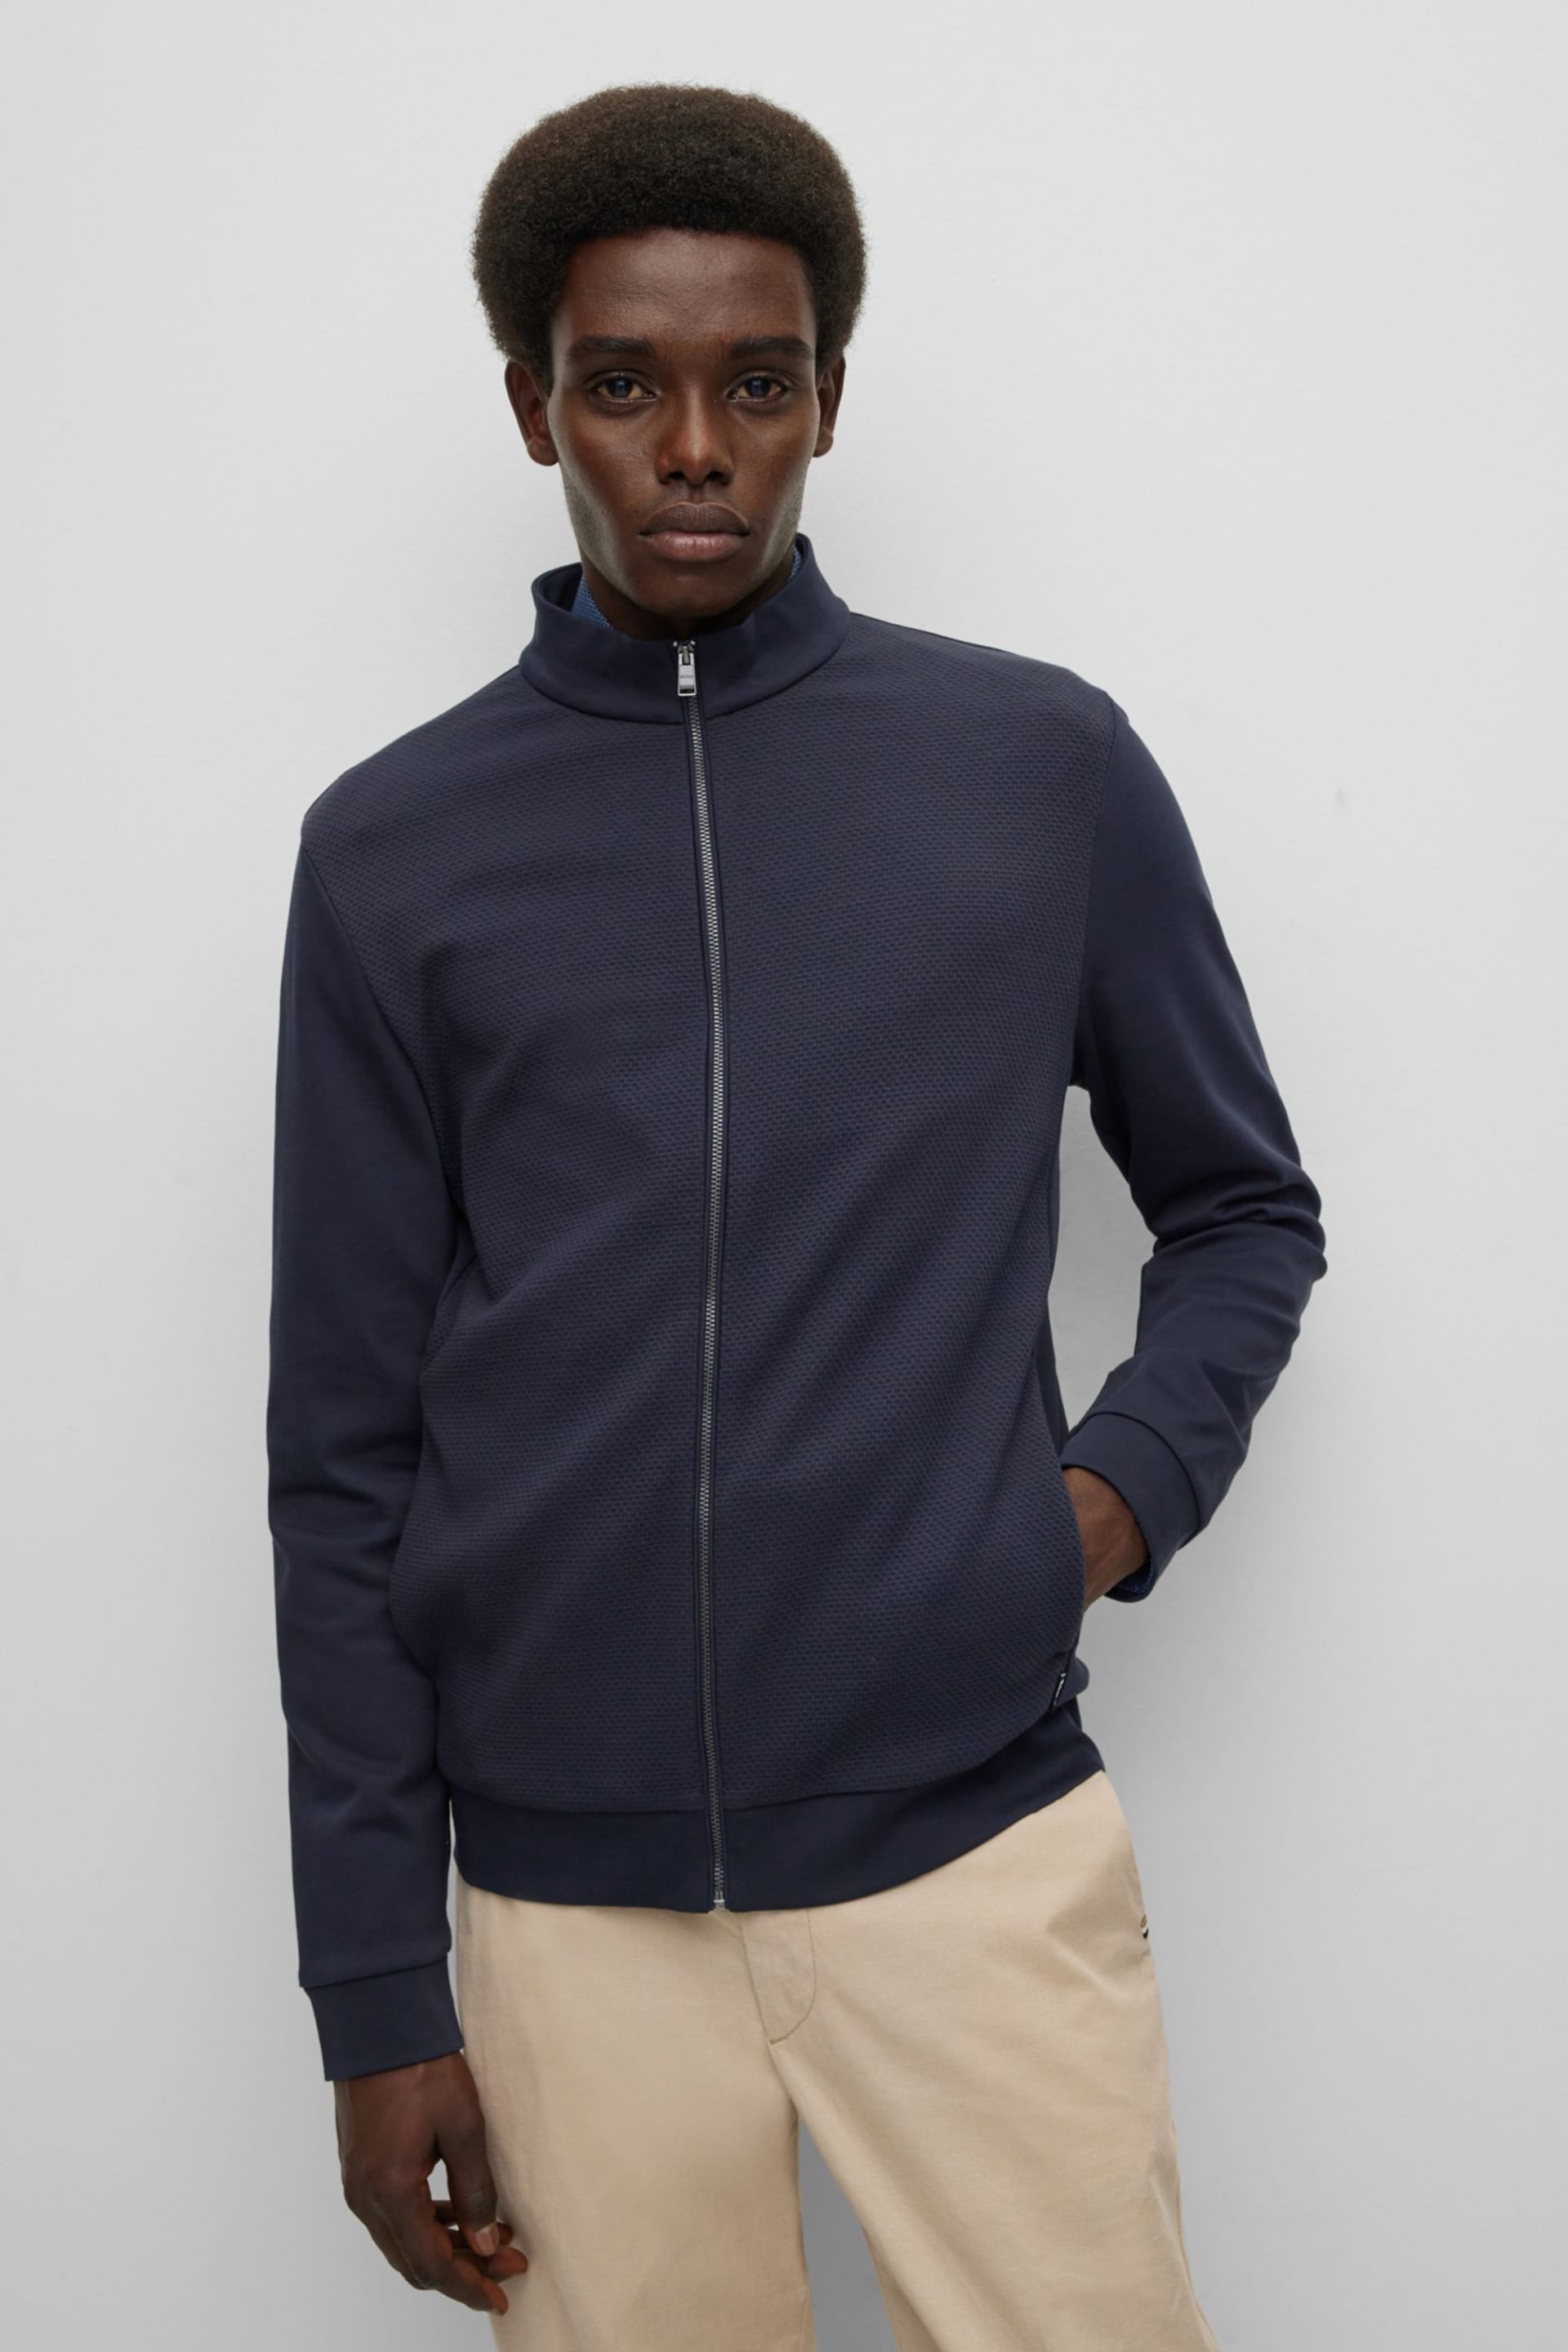 BOSS Dark Blue Textured Front Zip Through Sweatshirt - Image 1 of 4